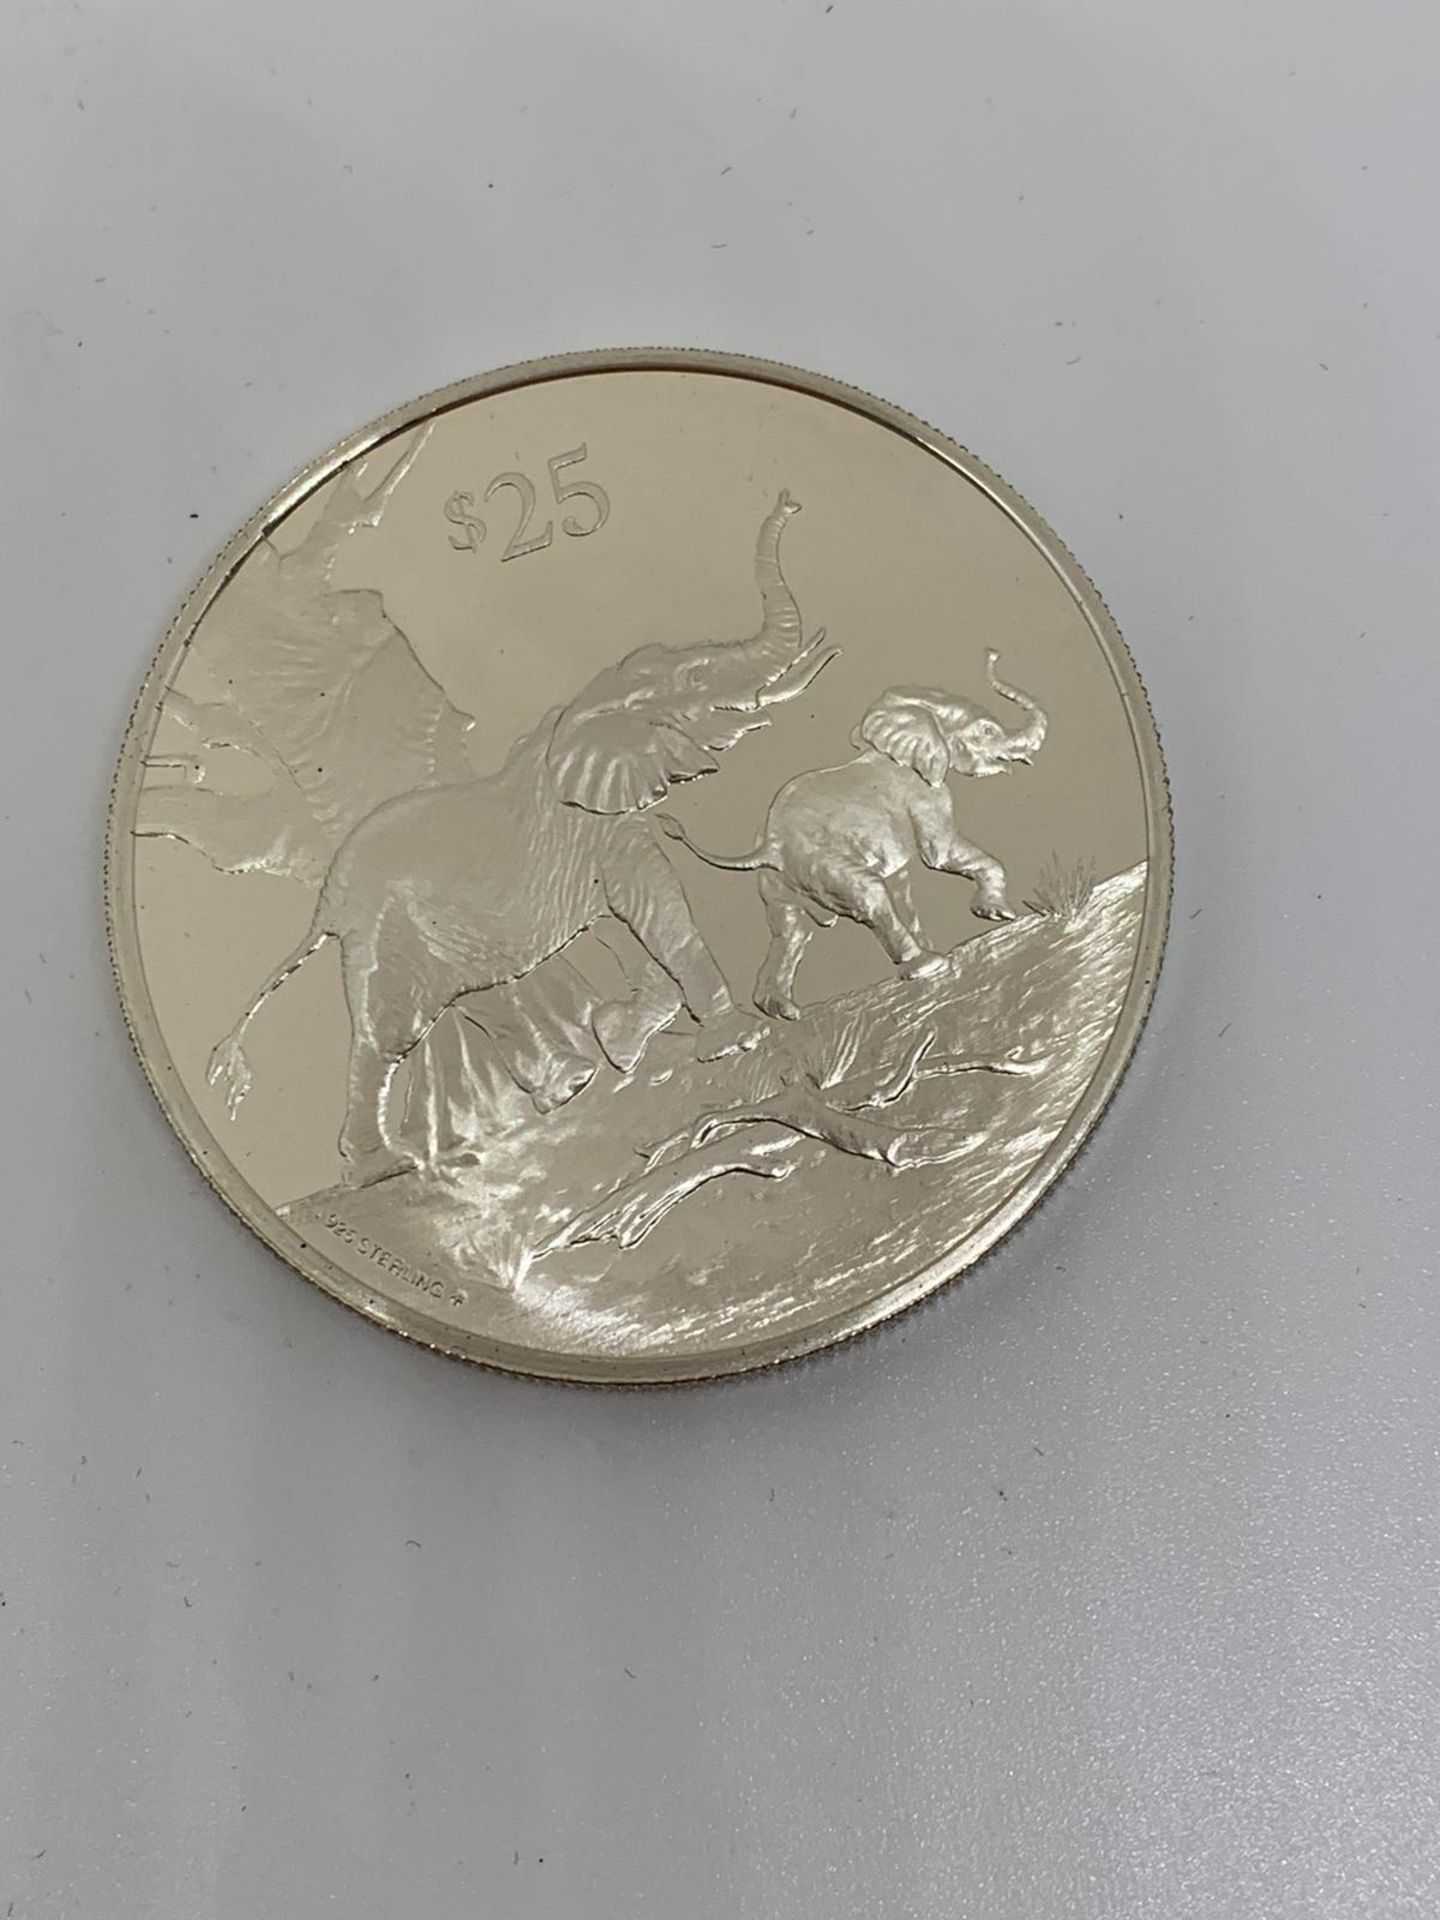 Silver Virgin Islands Coin